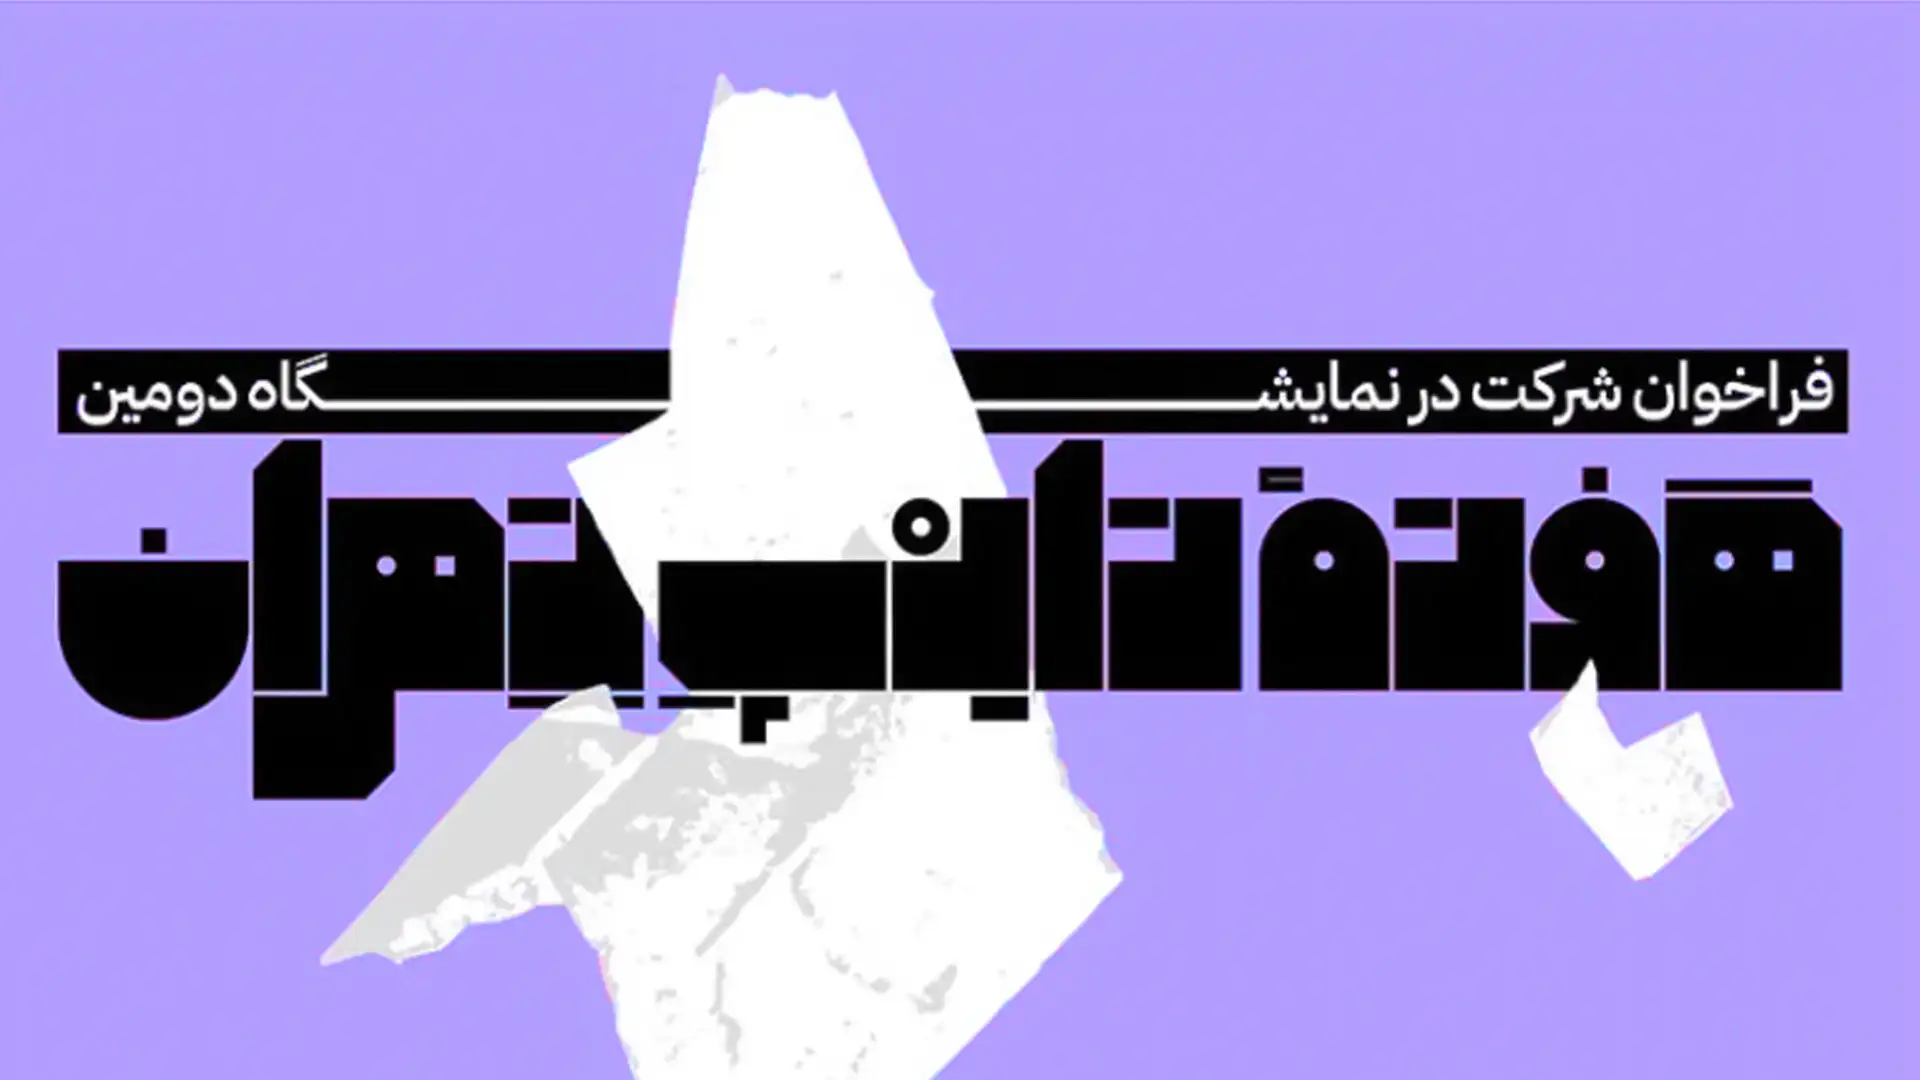 فراخوان دومین هفته تایپ تهران: نمایش خلاقیت در طراحی تایپ فارسی